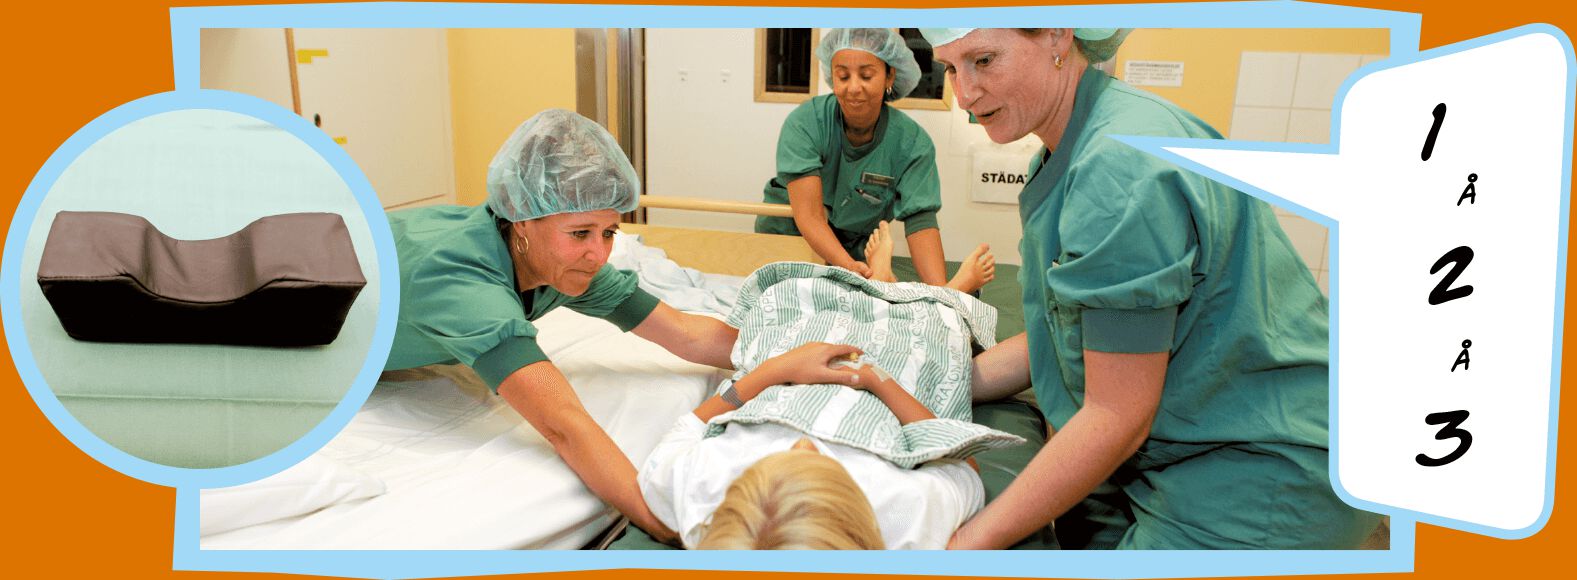 Sjuksköterskor i gröna sjukhuskläder hjälper blond pojke att flytta från sin sjukhussäng till en operationssäng.